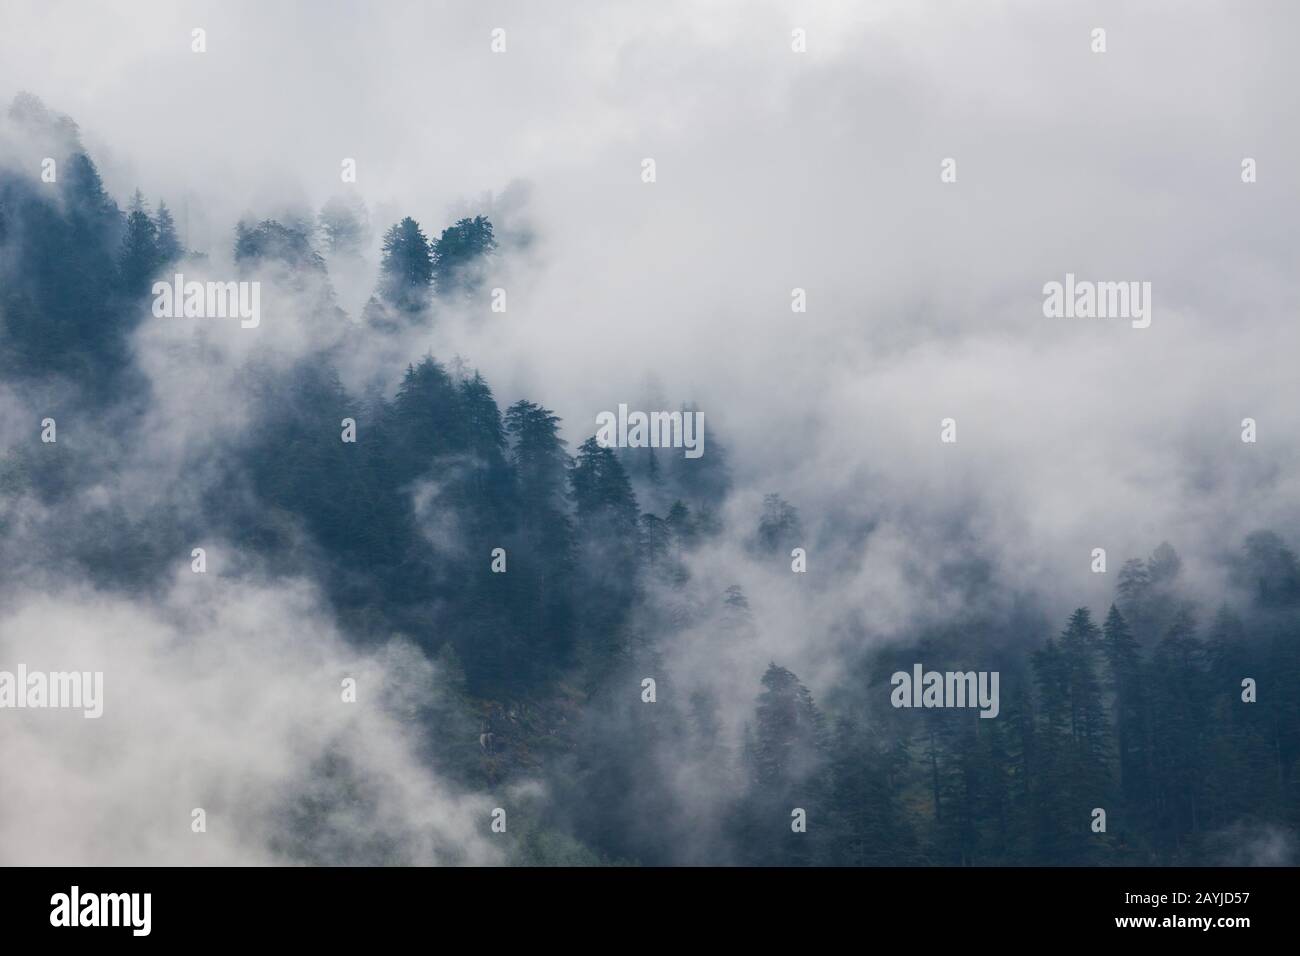 Landschaftlich schöner Blick auf den bewaldeten Berghang in Wolken mit den immergrünen Nadelbäumen in Nebel Stockfoto